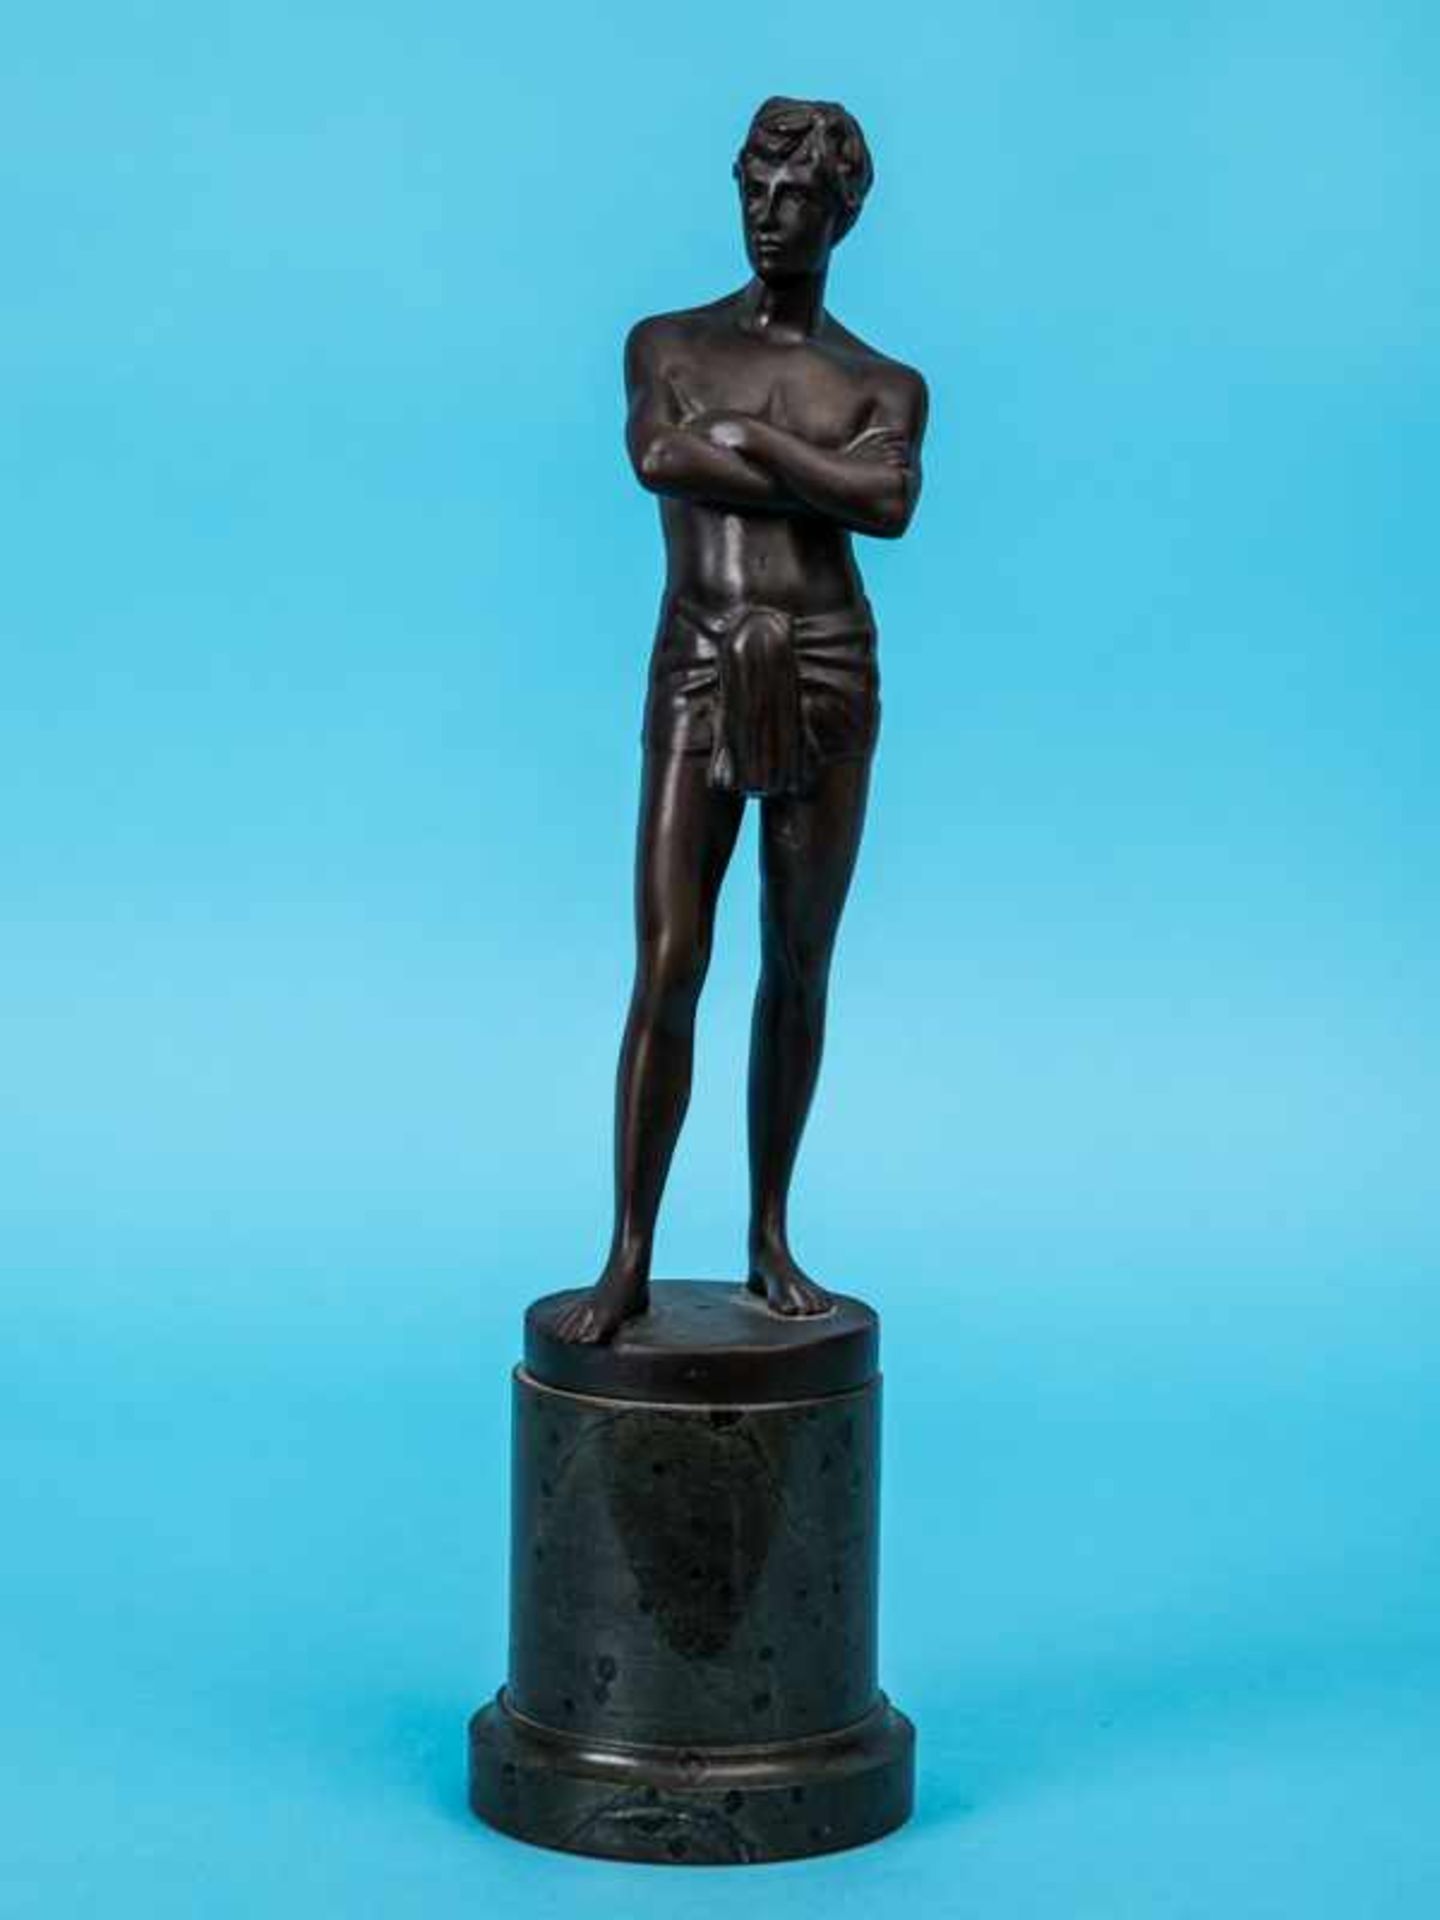 Figurenplastik "Junger Athlet mit Lendenschurz", bezeichnet "Cartinet", Frankreich 1. Hälfte 20. Jh.